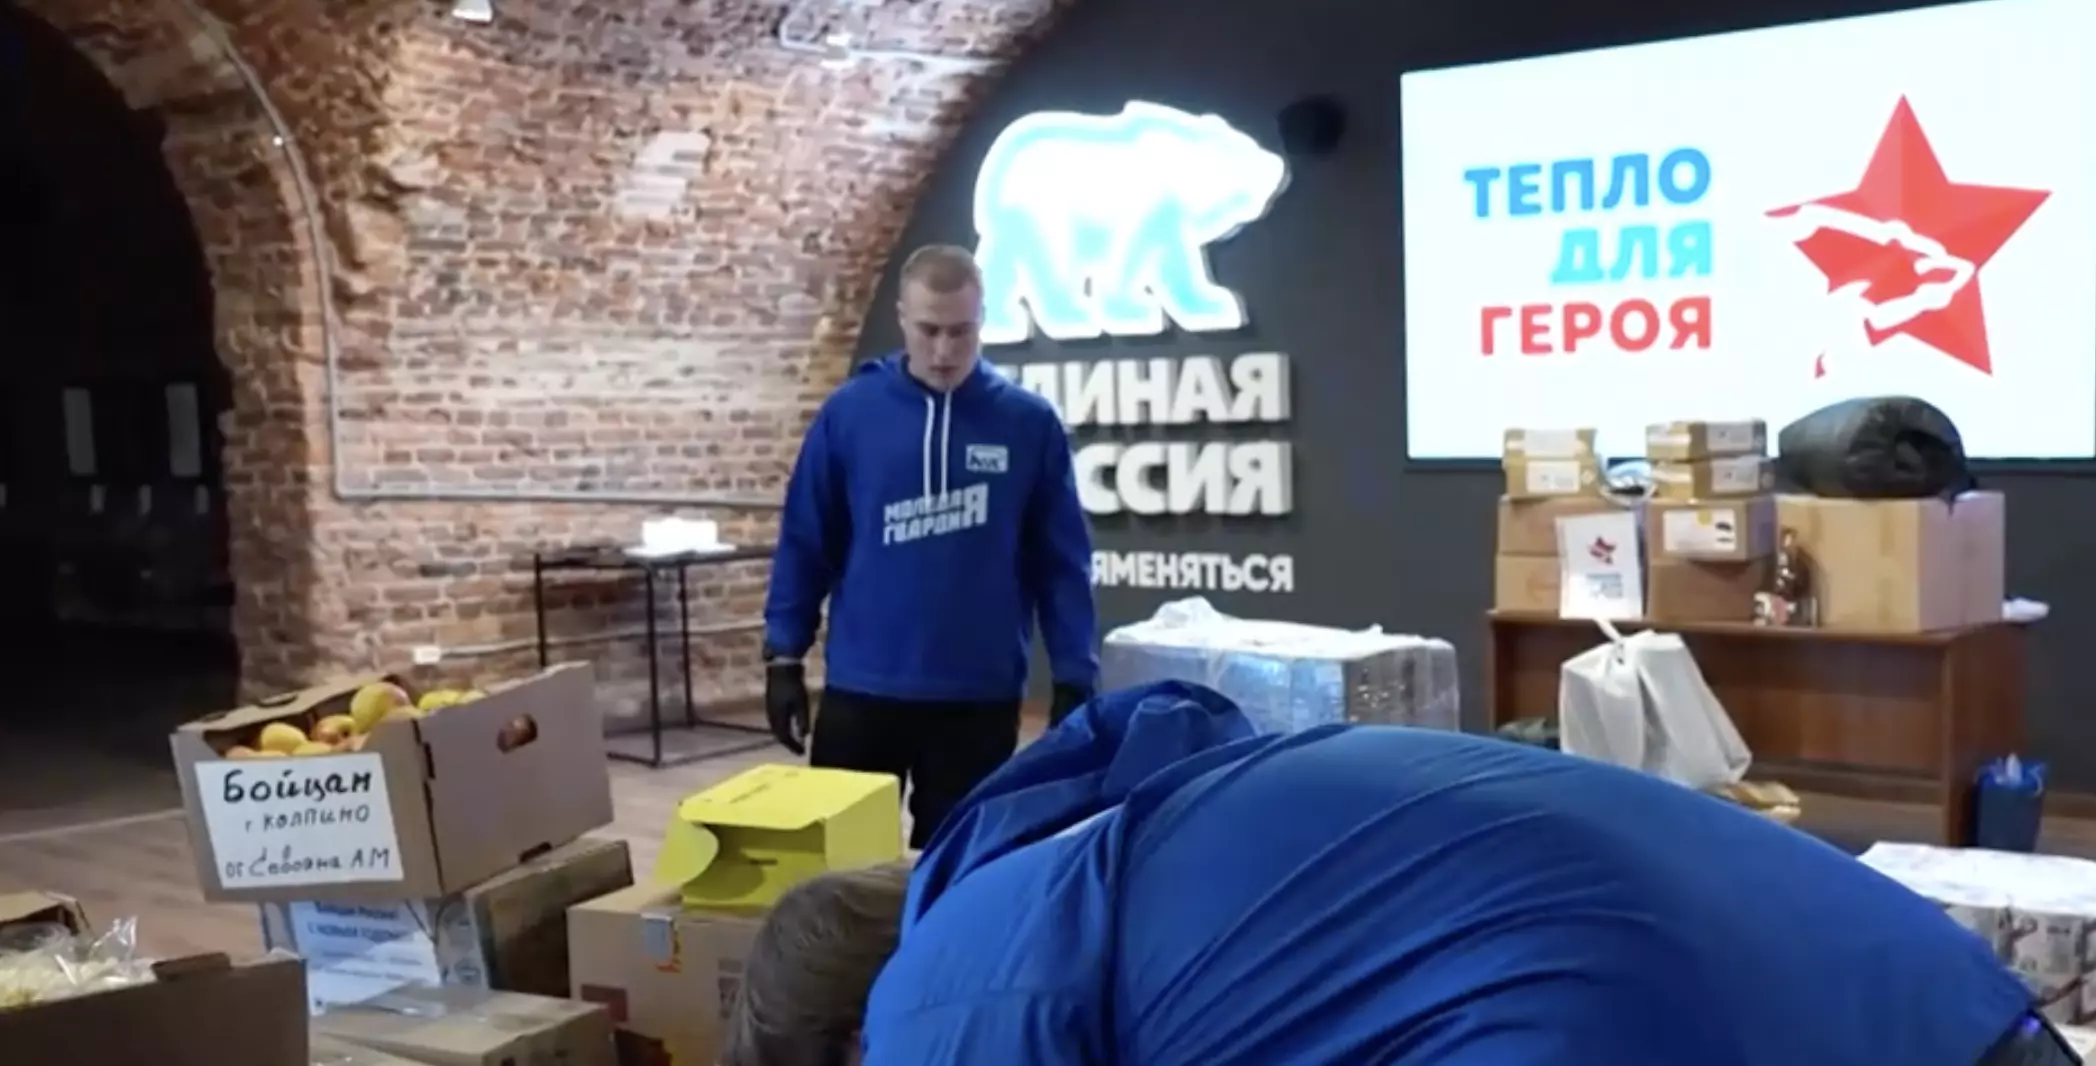 Ко Дню защитника отечества Петербуржцы отправили посылки на передовую